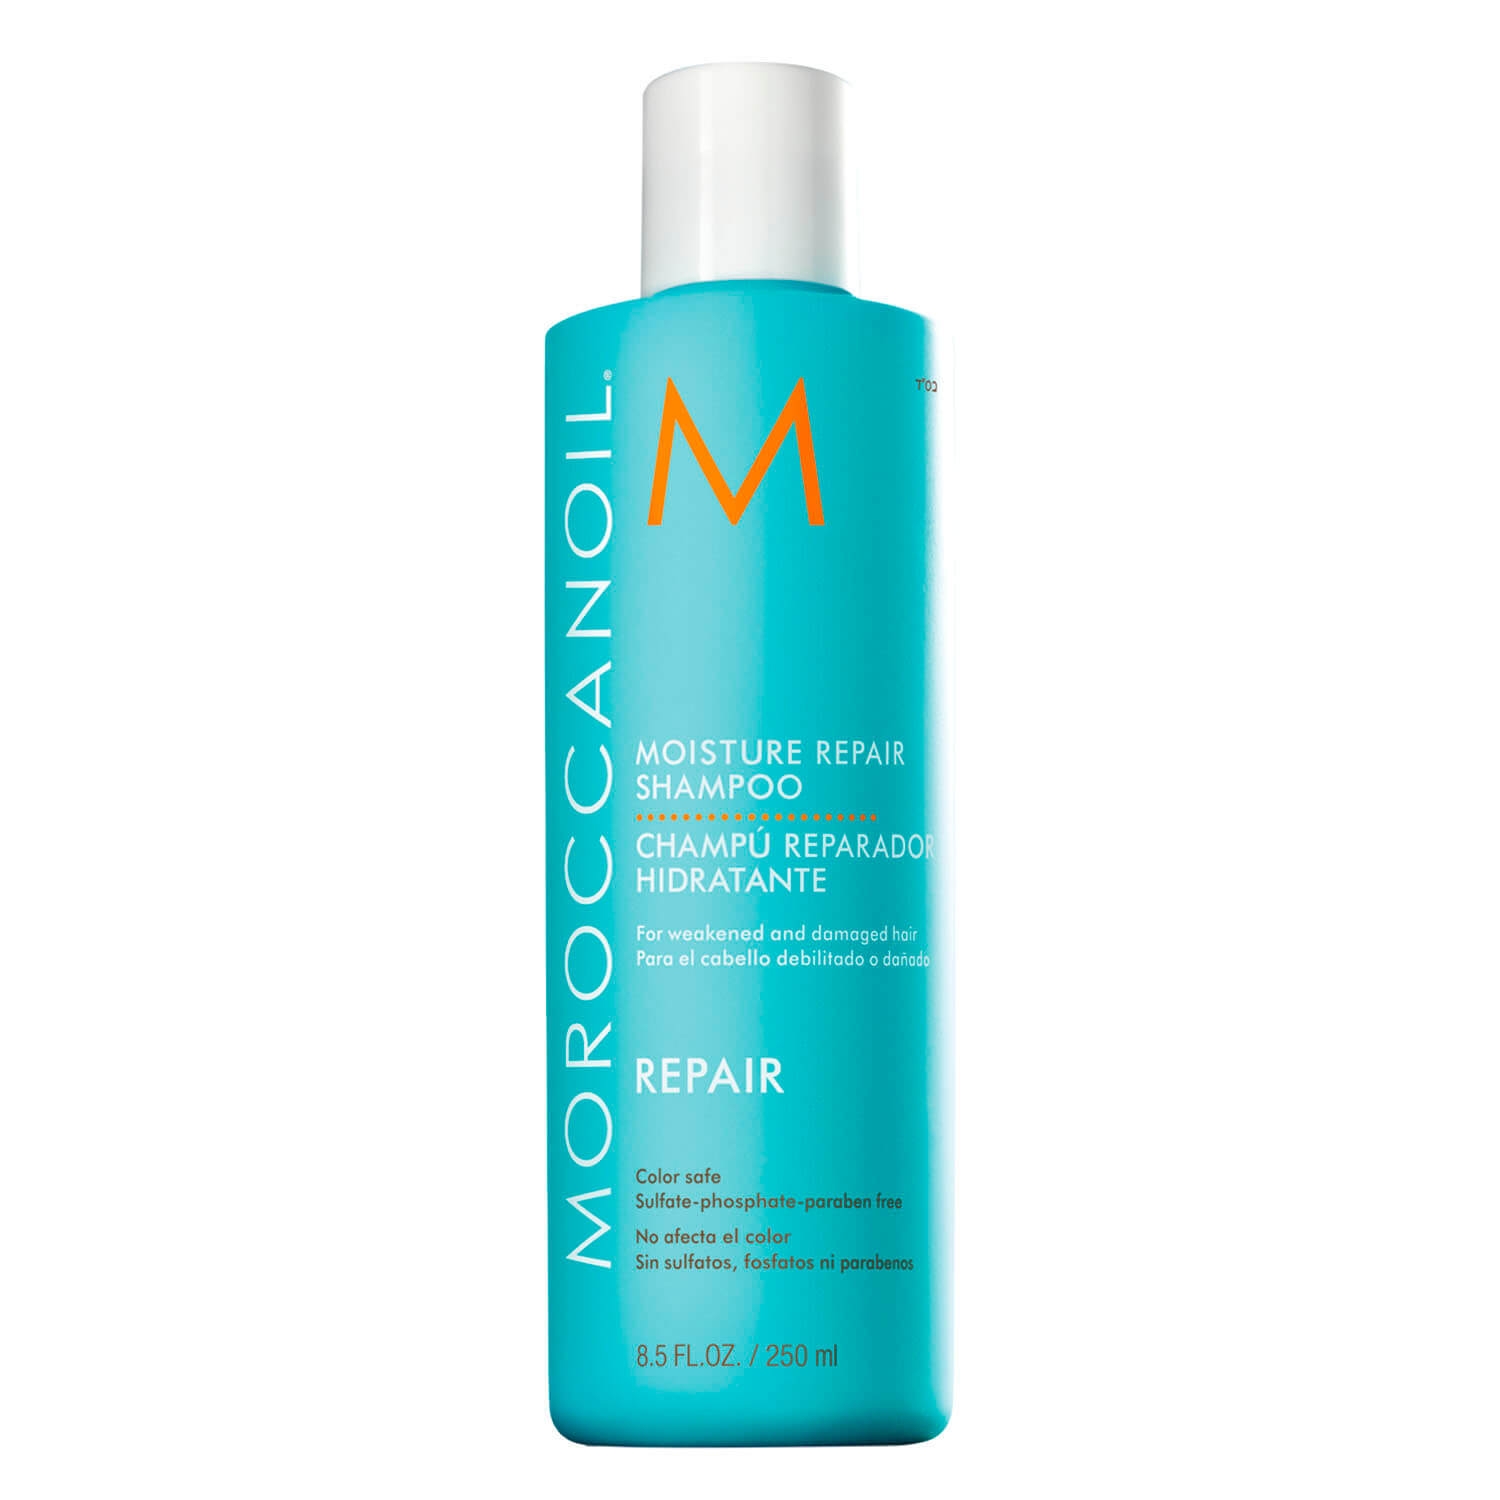 Produktbild von Moroccanoil - Moisture Repair Shampoo